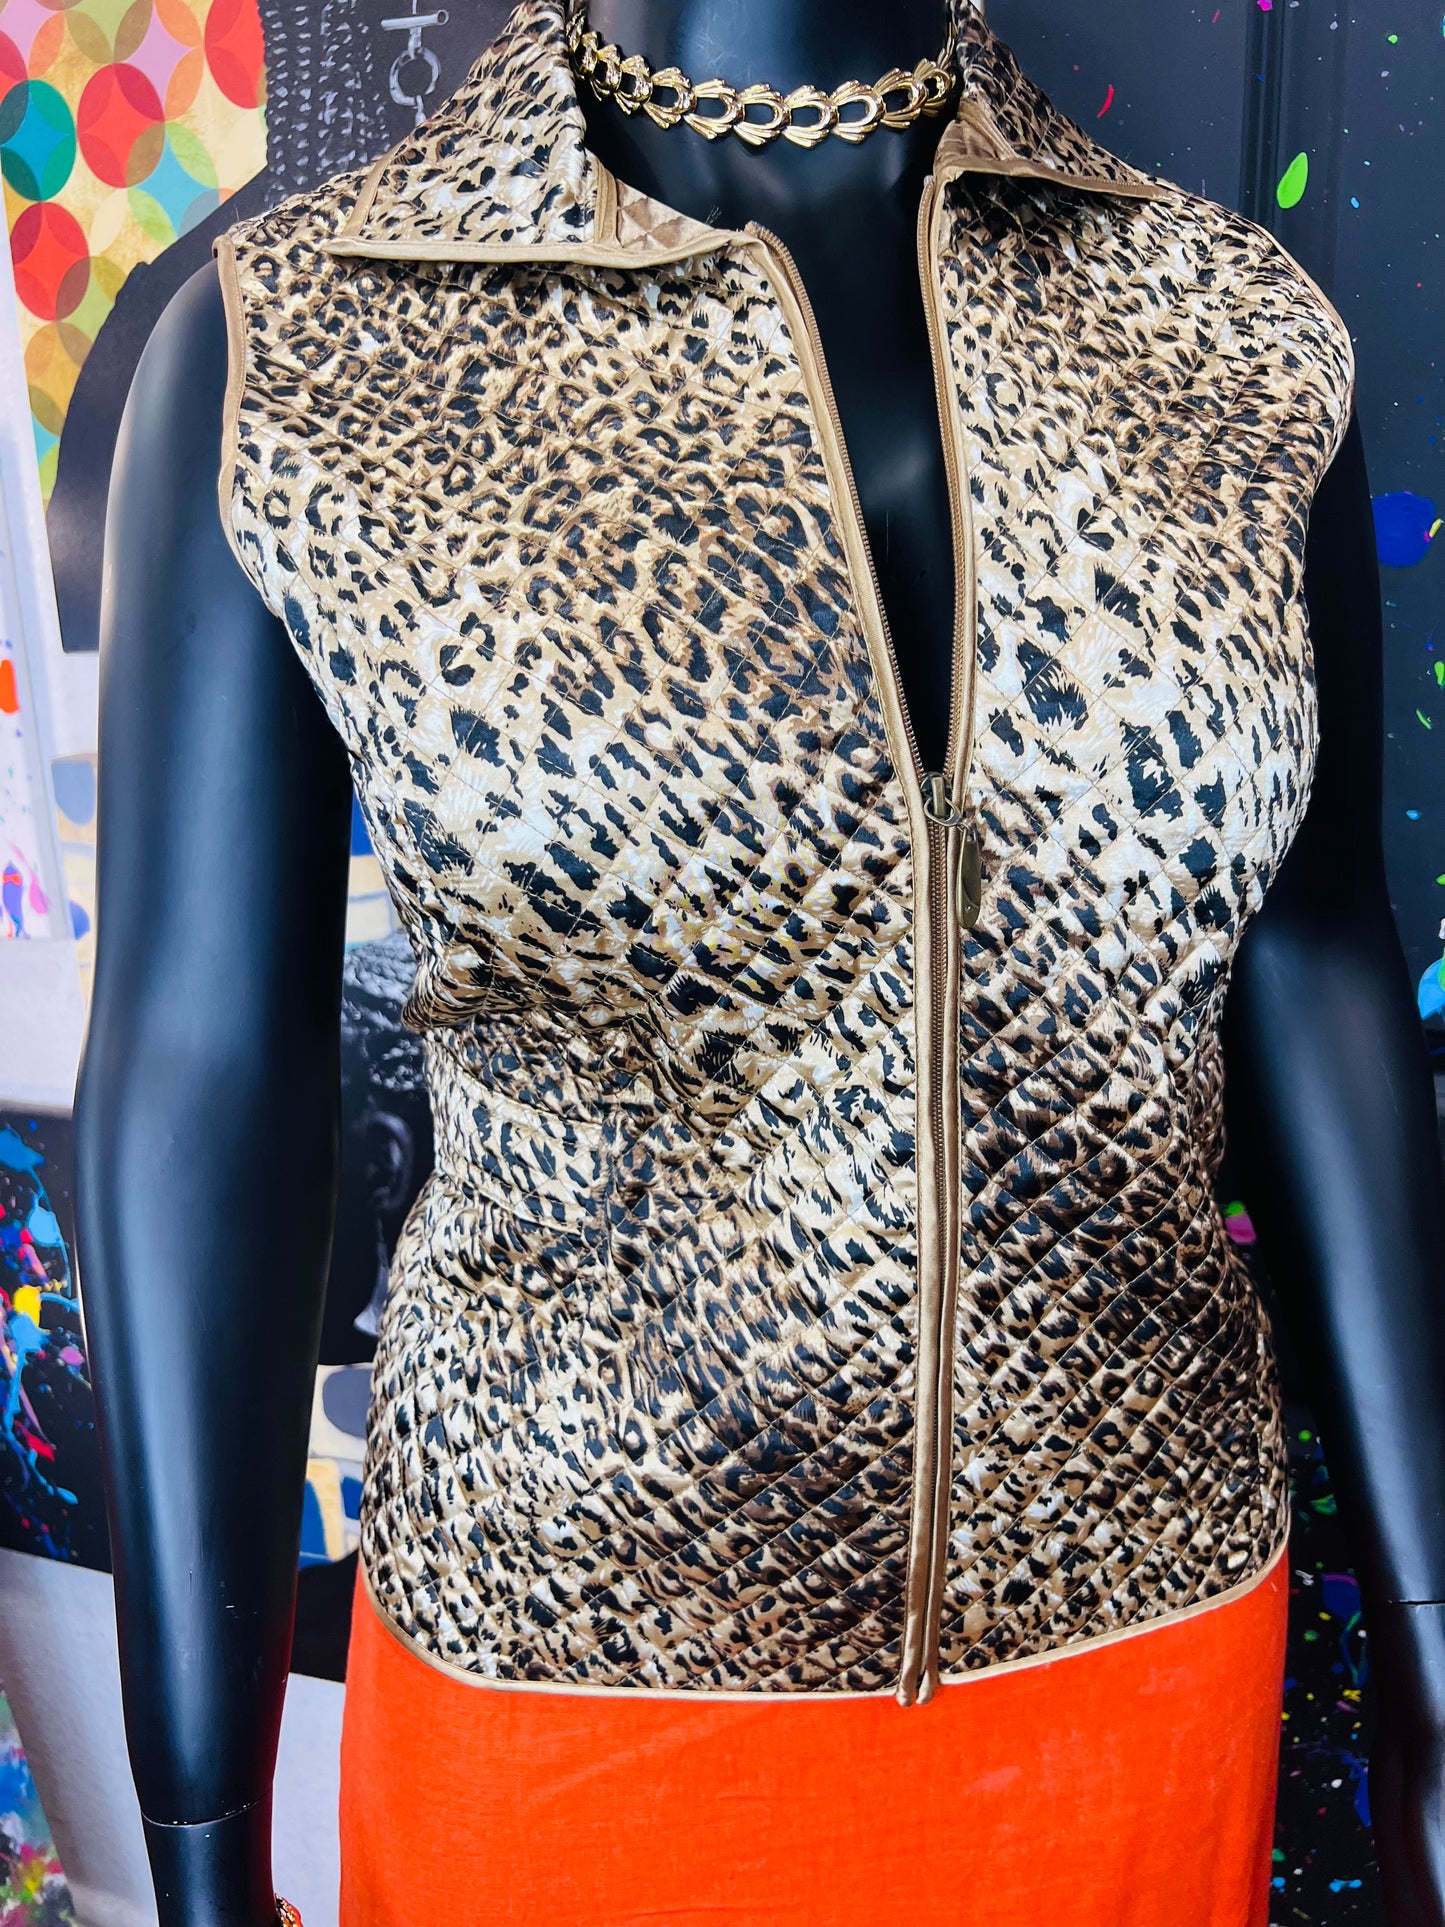 Vintage Cheetah Print Vest